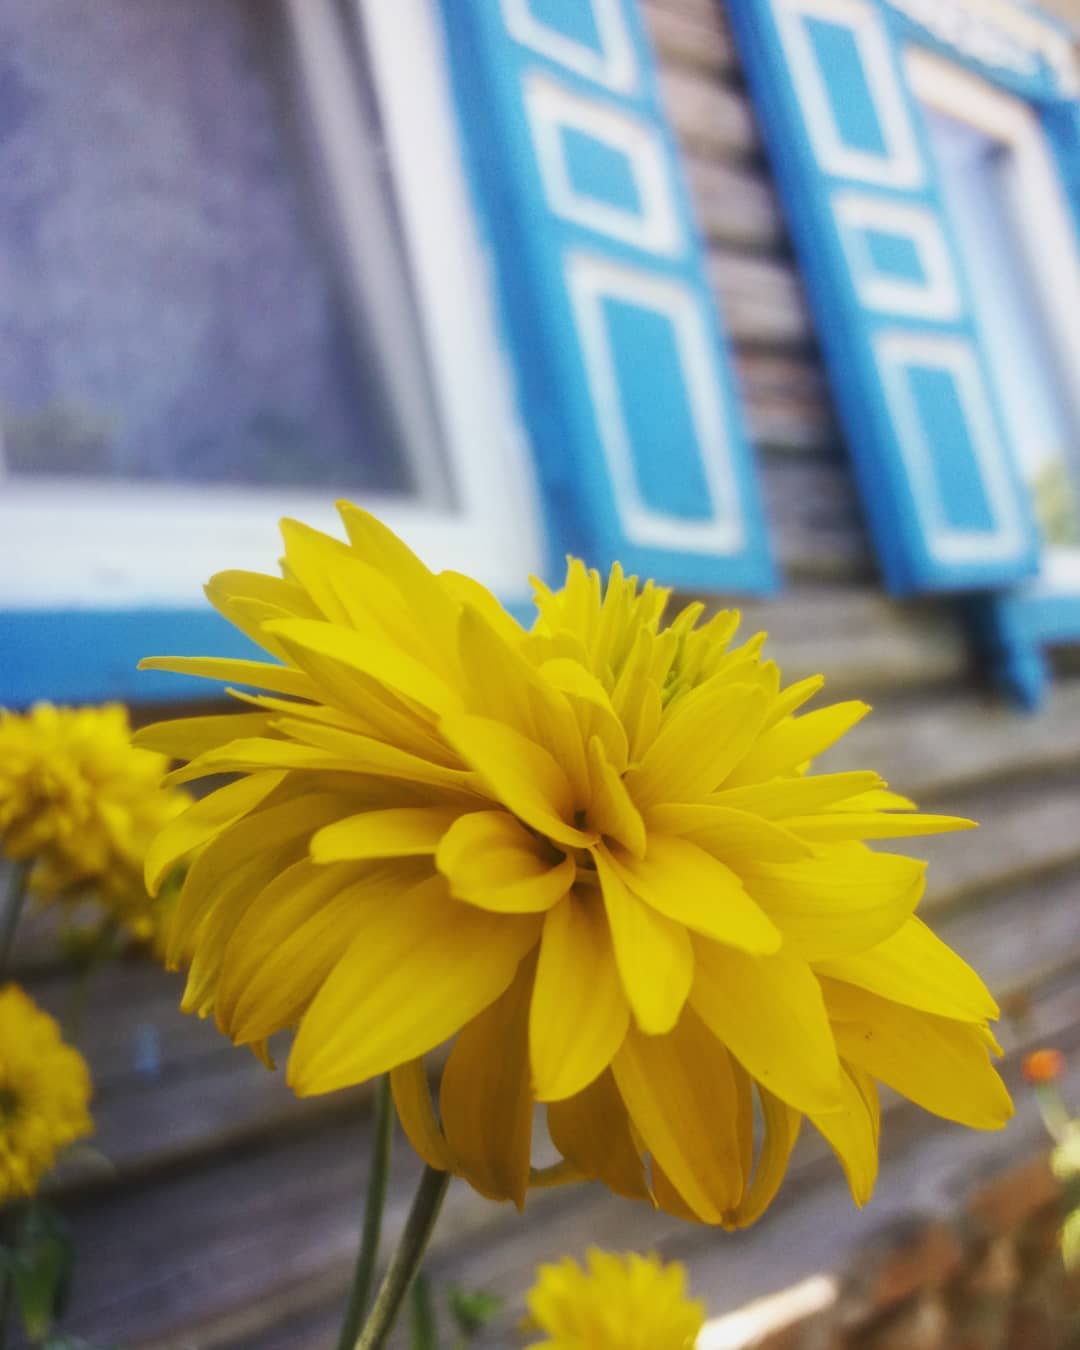 Весь украинский сегмент Instagram сегодня был раскрашен в сине-желтые цвета. И это прекрасно! Фото - @ira_rusacosa